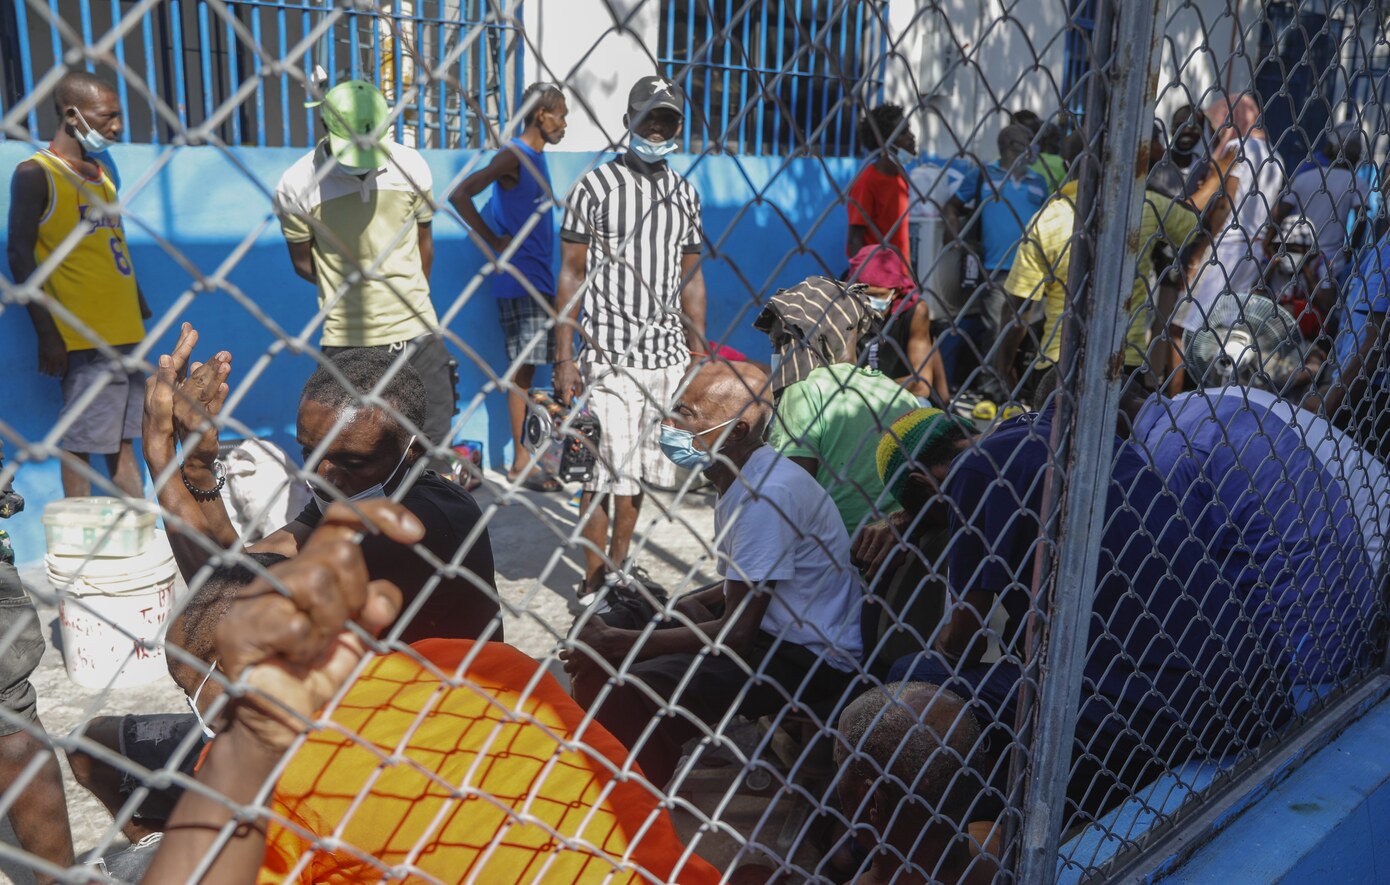 Σε κατάσταση εκτάκτου ανάγκης η Αϊτή μετά τα αιματηρά επεισόδια και τη μαζική απόδραση κρατουμένων